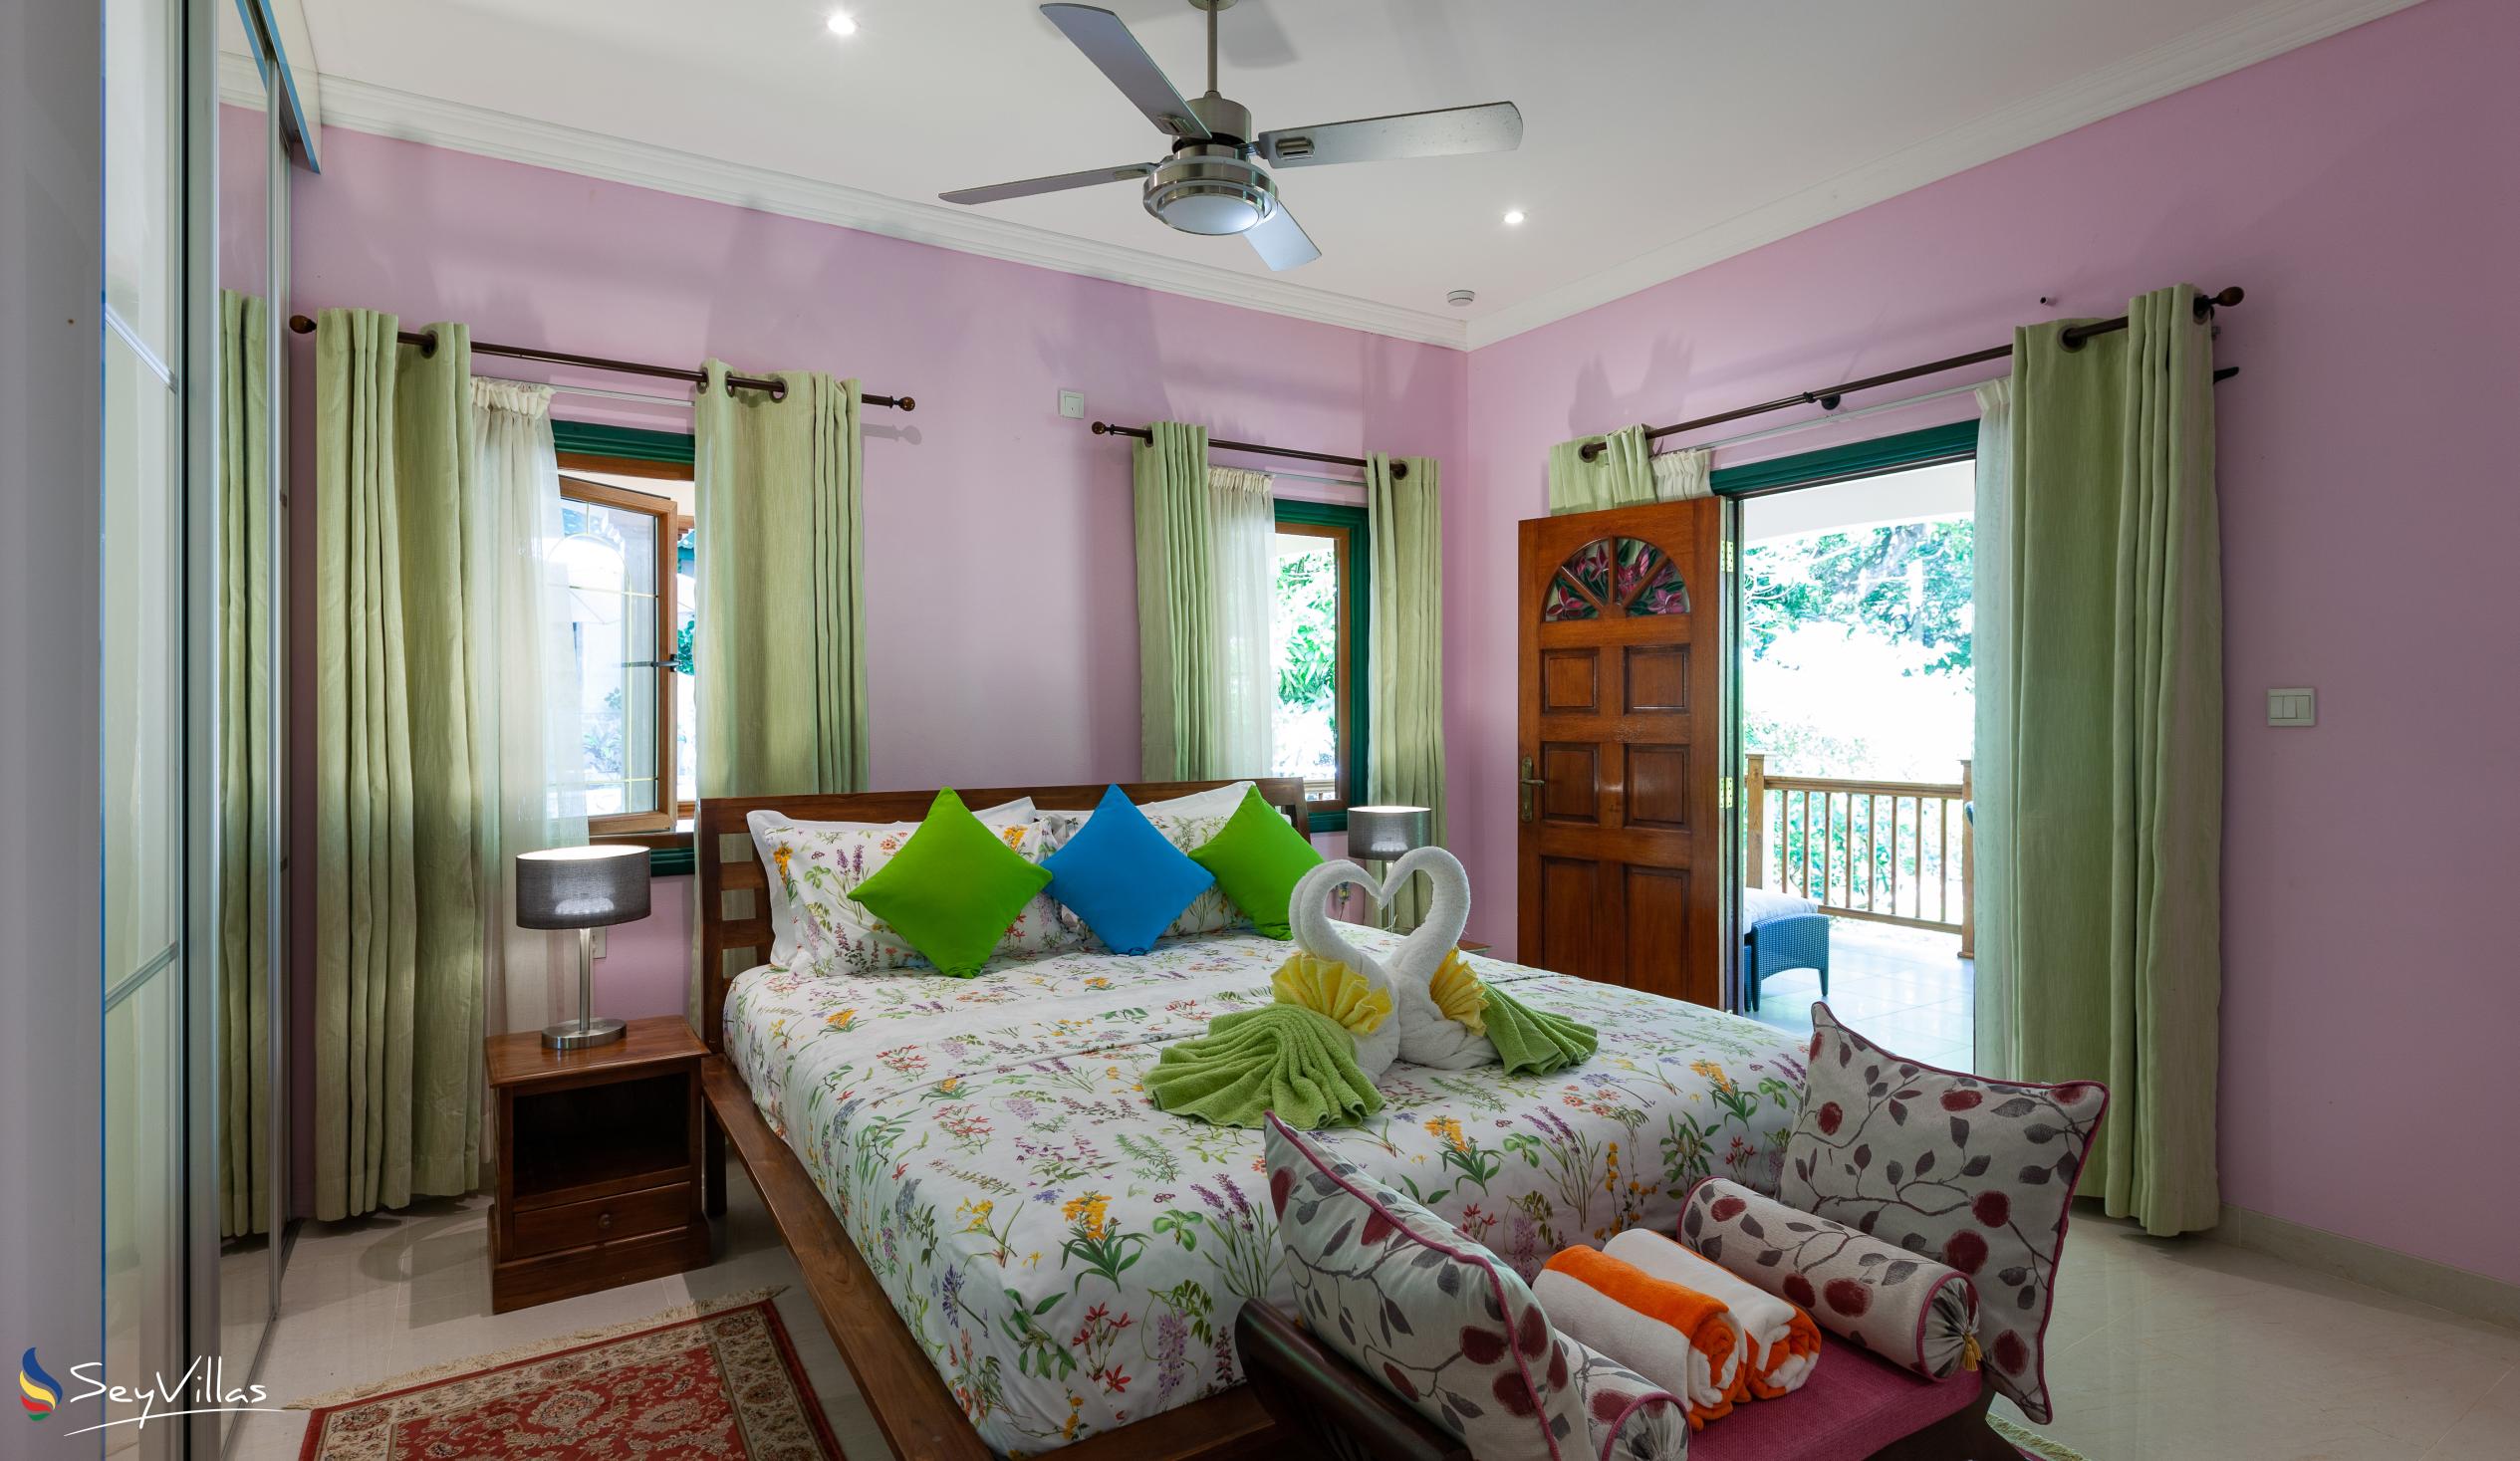 Photo 40: Pension Michel - Villa Roche Bois - Superior Room - La Digue (Seychelles)